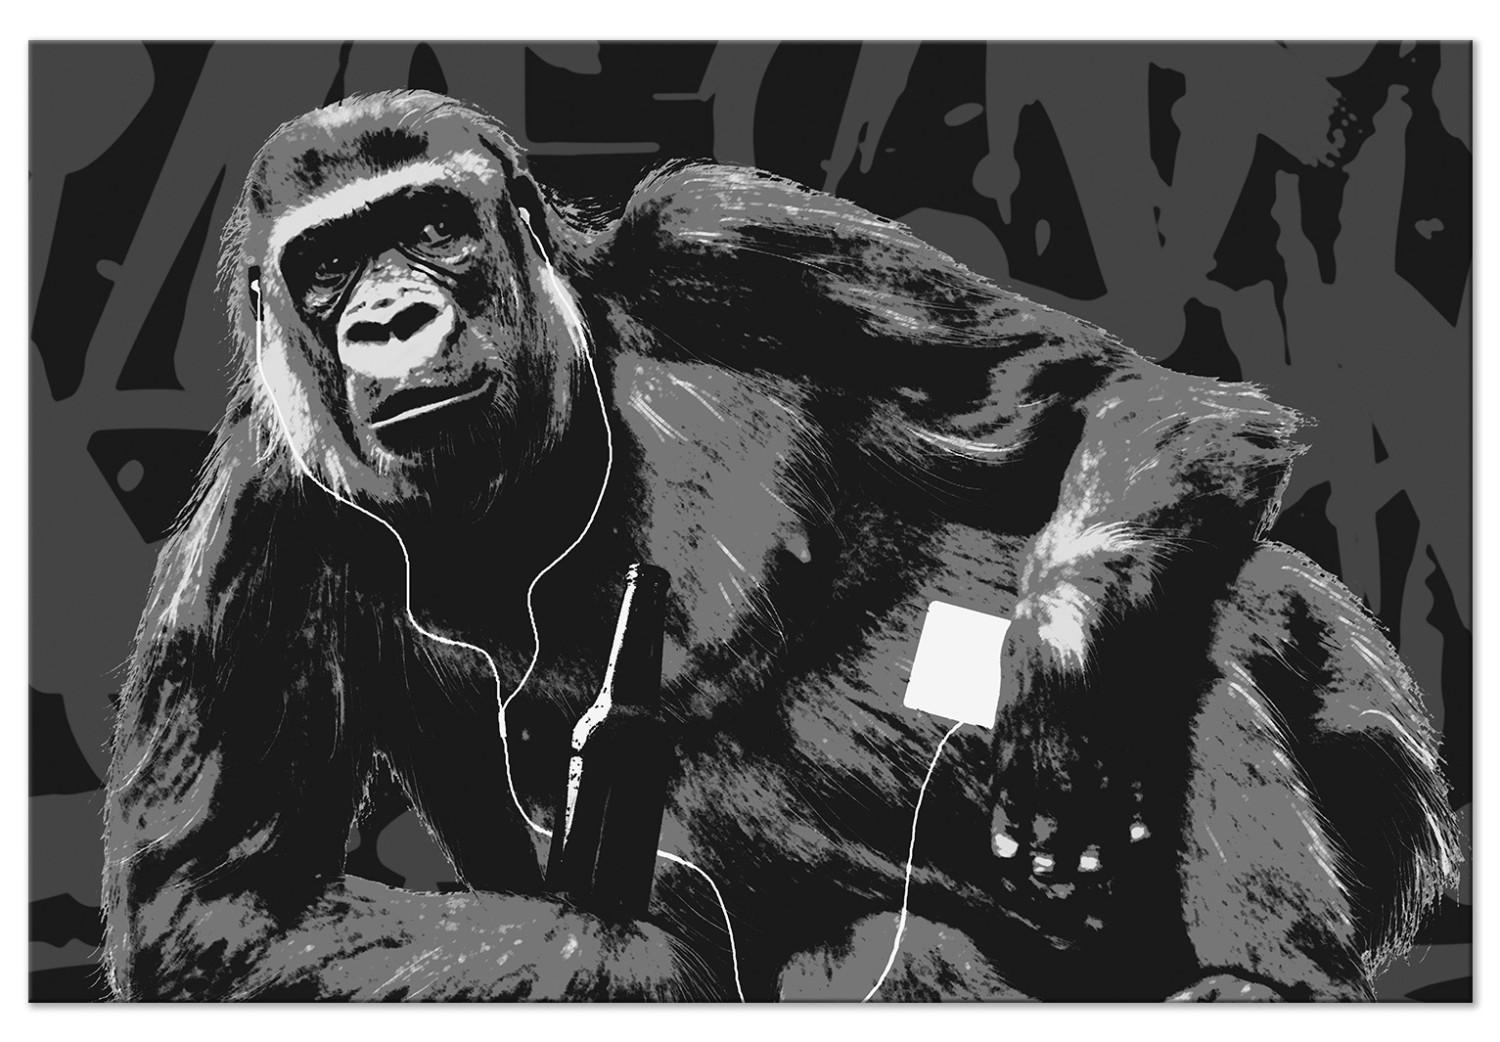 Cuadro Podcast favorito - dibujo divertido del mono, estilo pop art y grafiti